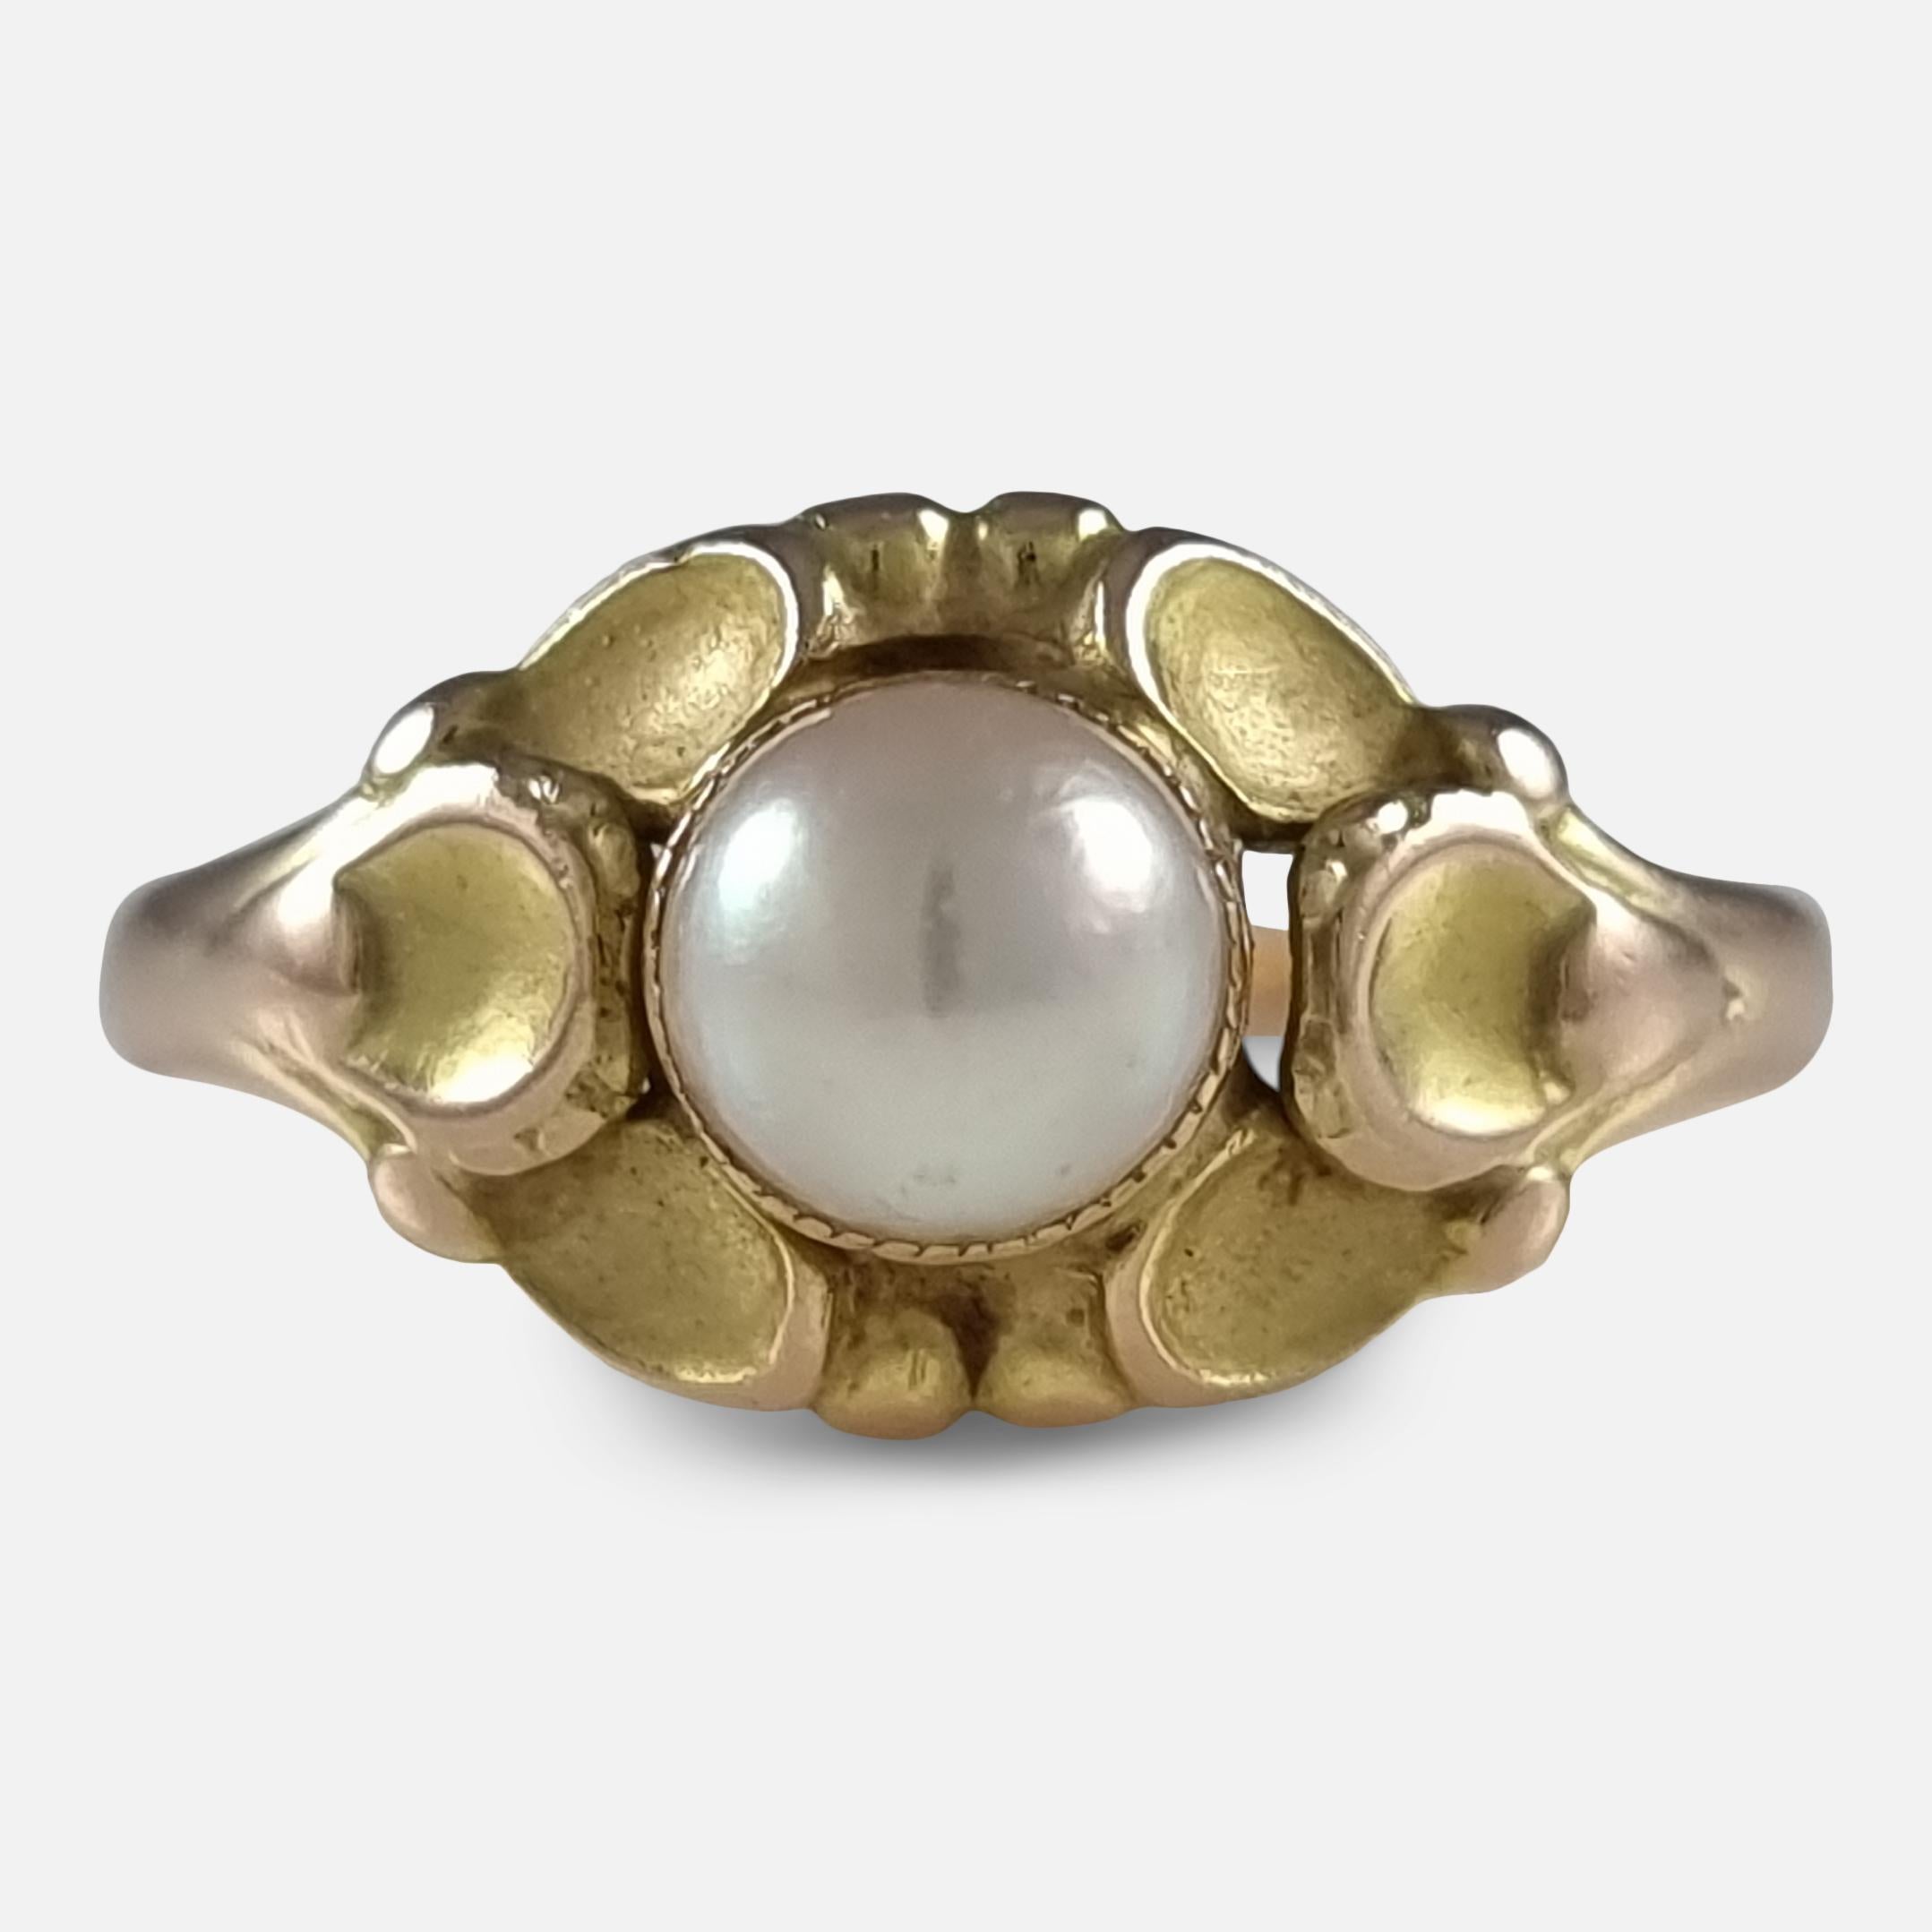 Ein Ring aus 14 Karat Gelbgold und Perlen, #272, von Georg Jensen.

Der Ring ist mit den zwischen 1933-44 verwendeten Georg Jensen-Marken 